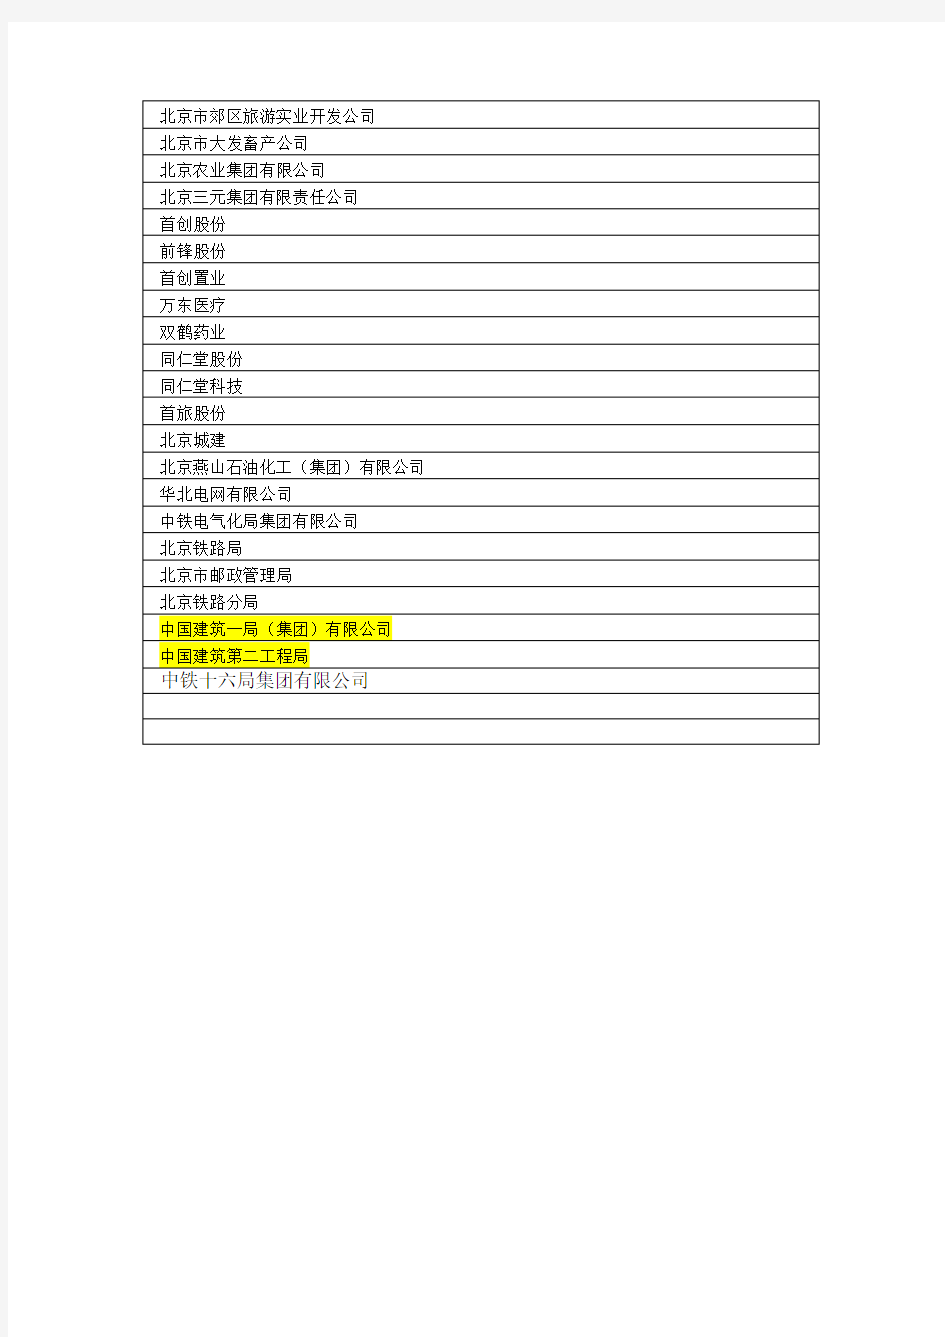 北京国有企业名单